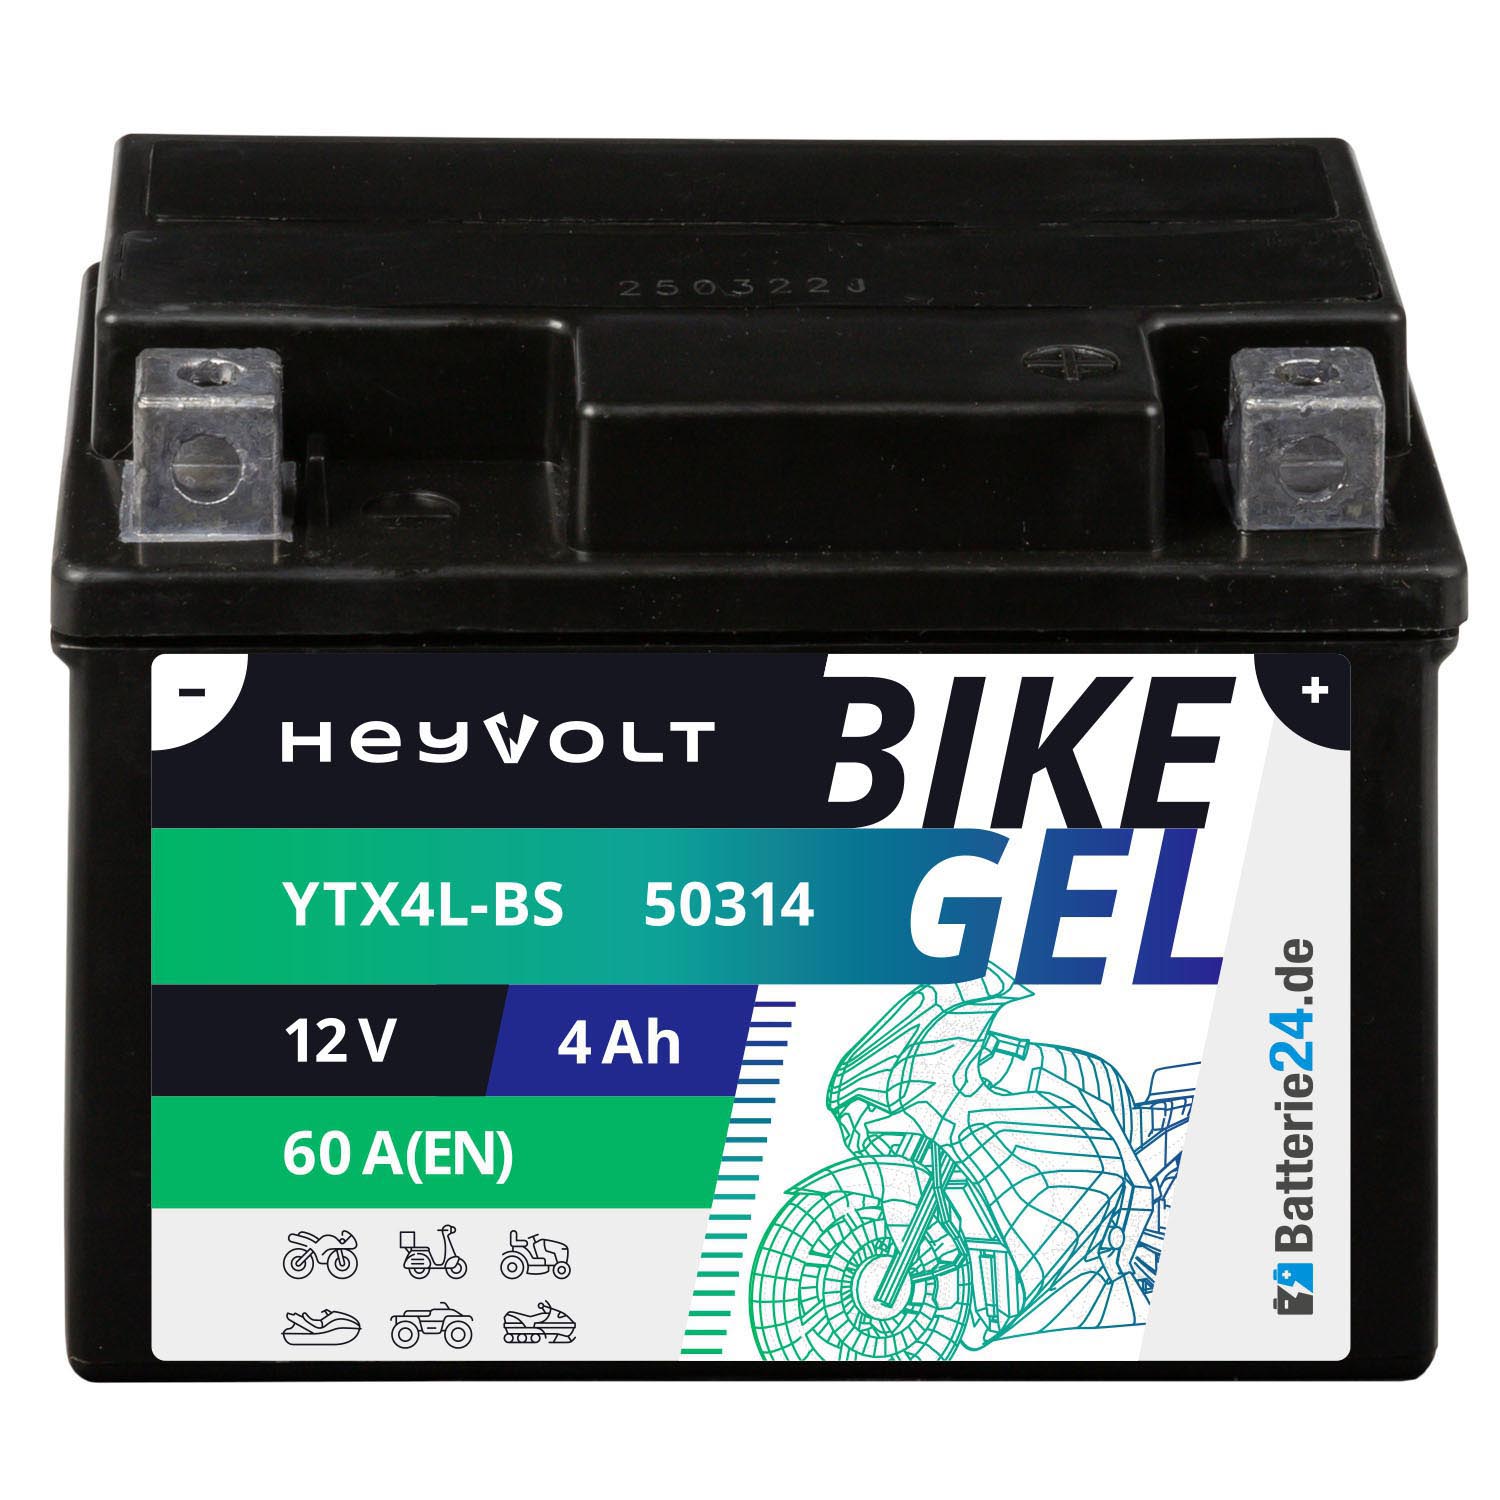 HeyVolt BIKE GEL Motorradbatterie YTX4L-BS 50314 12V 4Ah